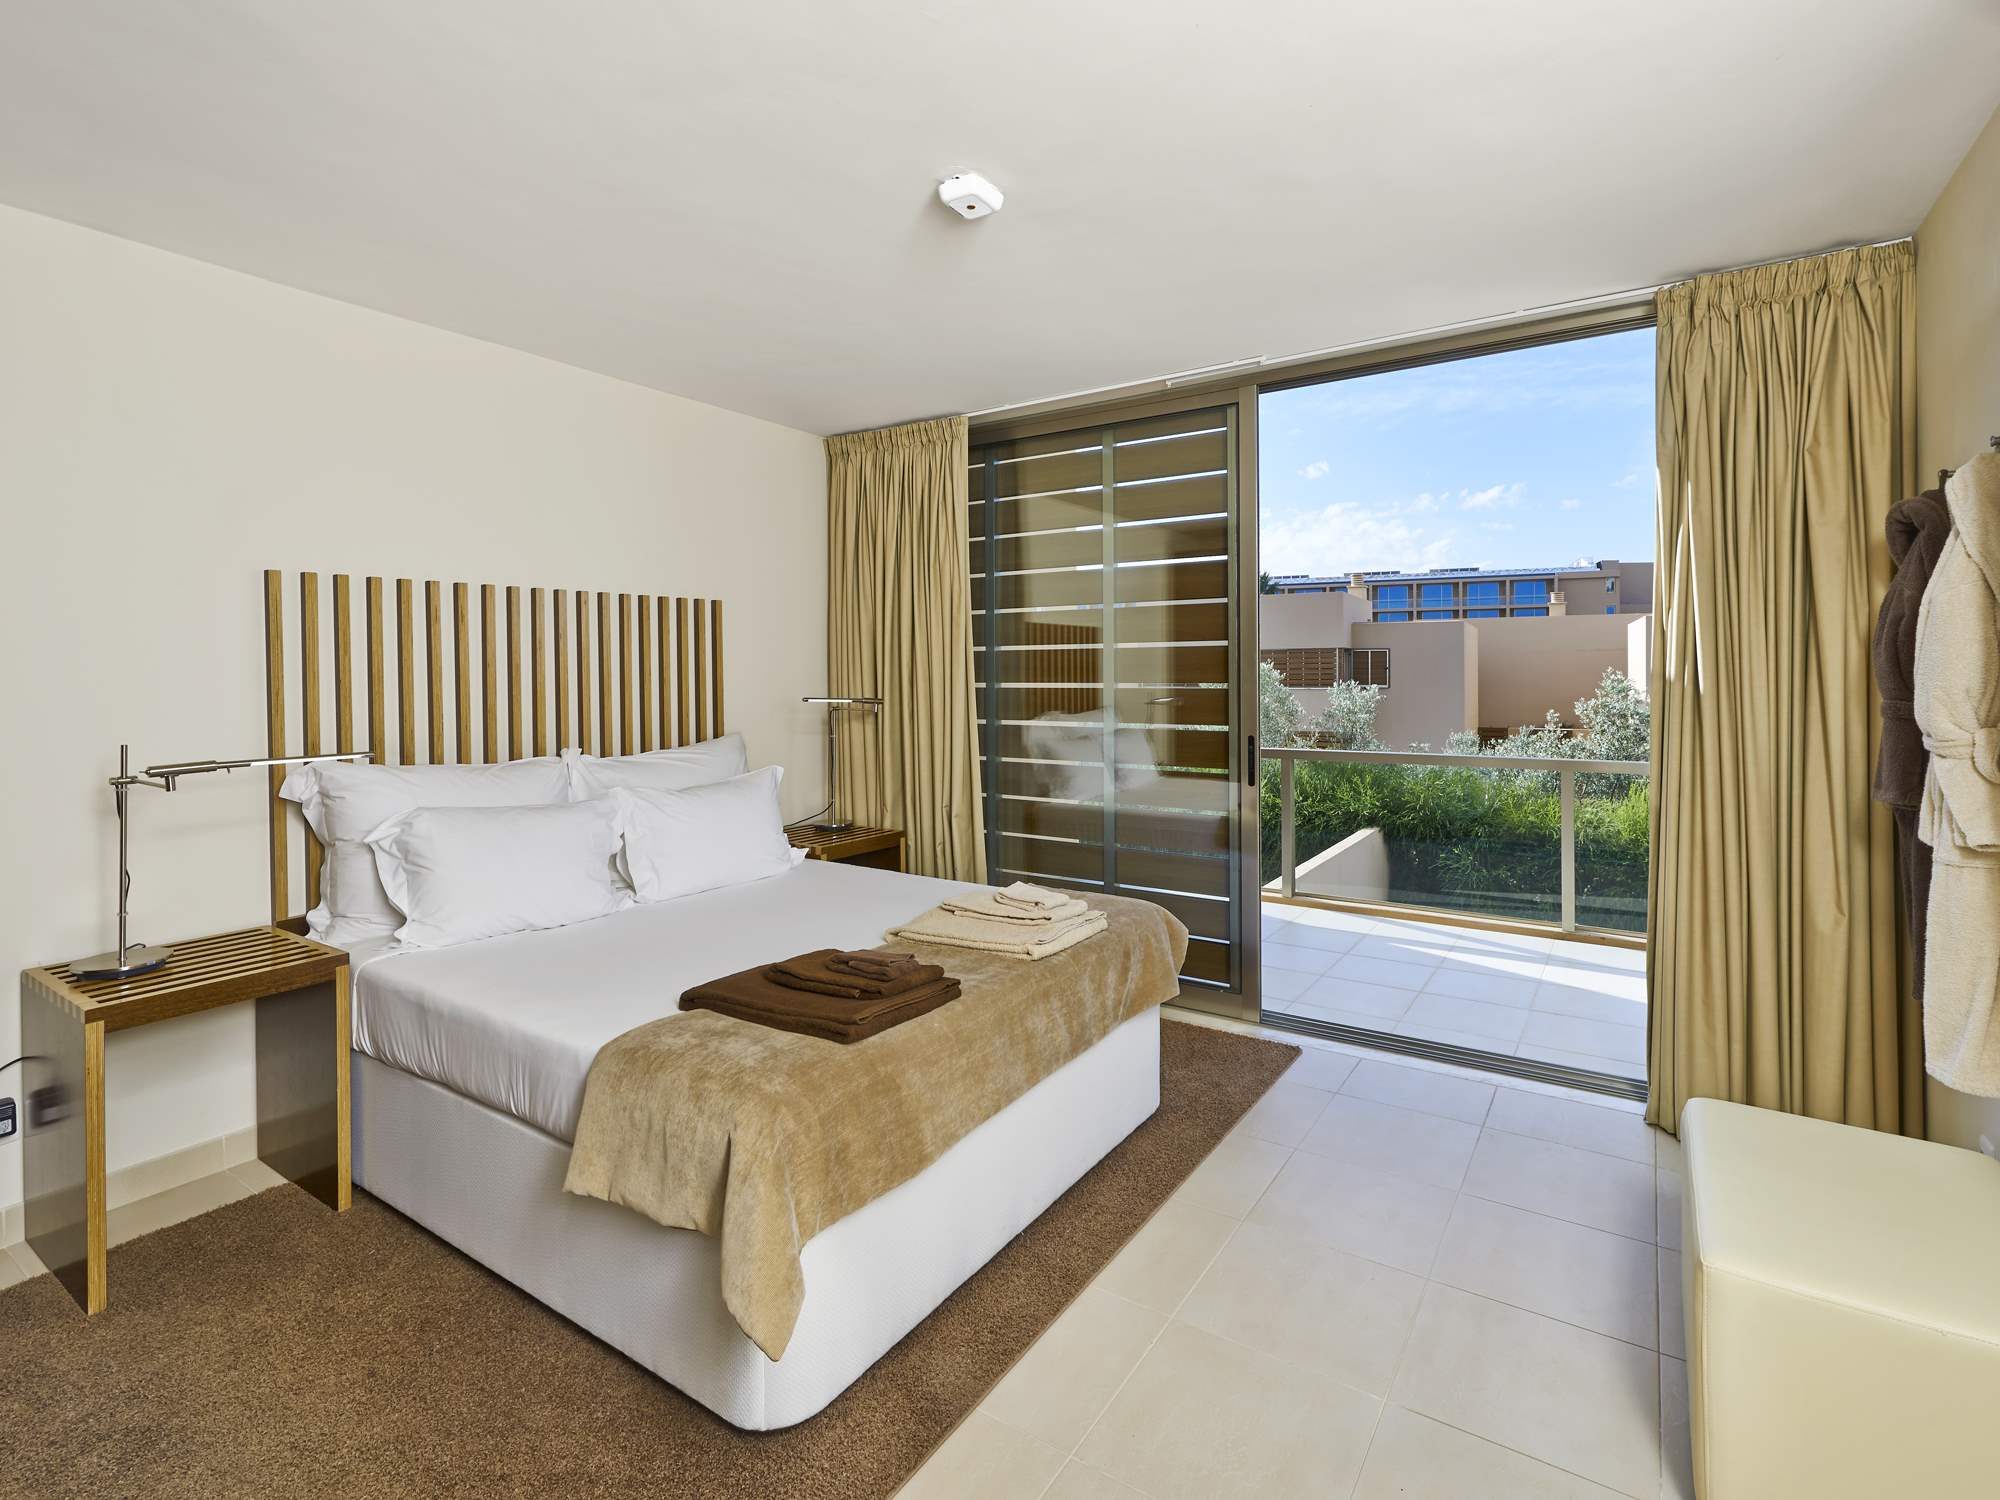 Salgados Beach Villas, 2 Bed, SC Basis, 2 bedroom villa in Gale, Vale da Parra and Guia, Algarve Photo #8